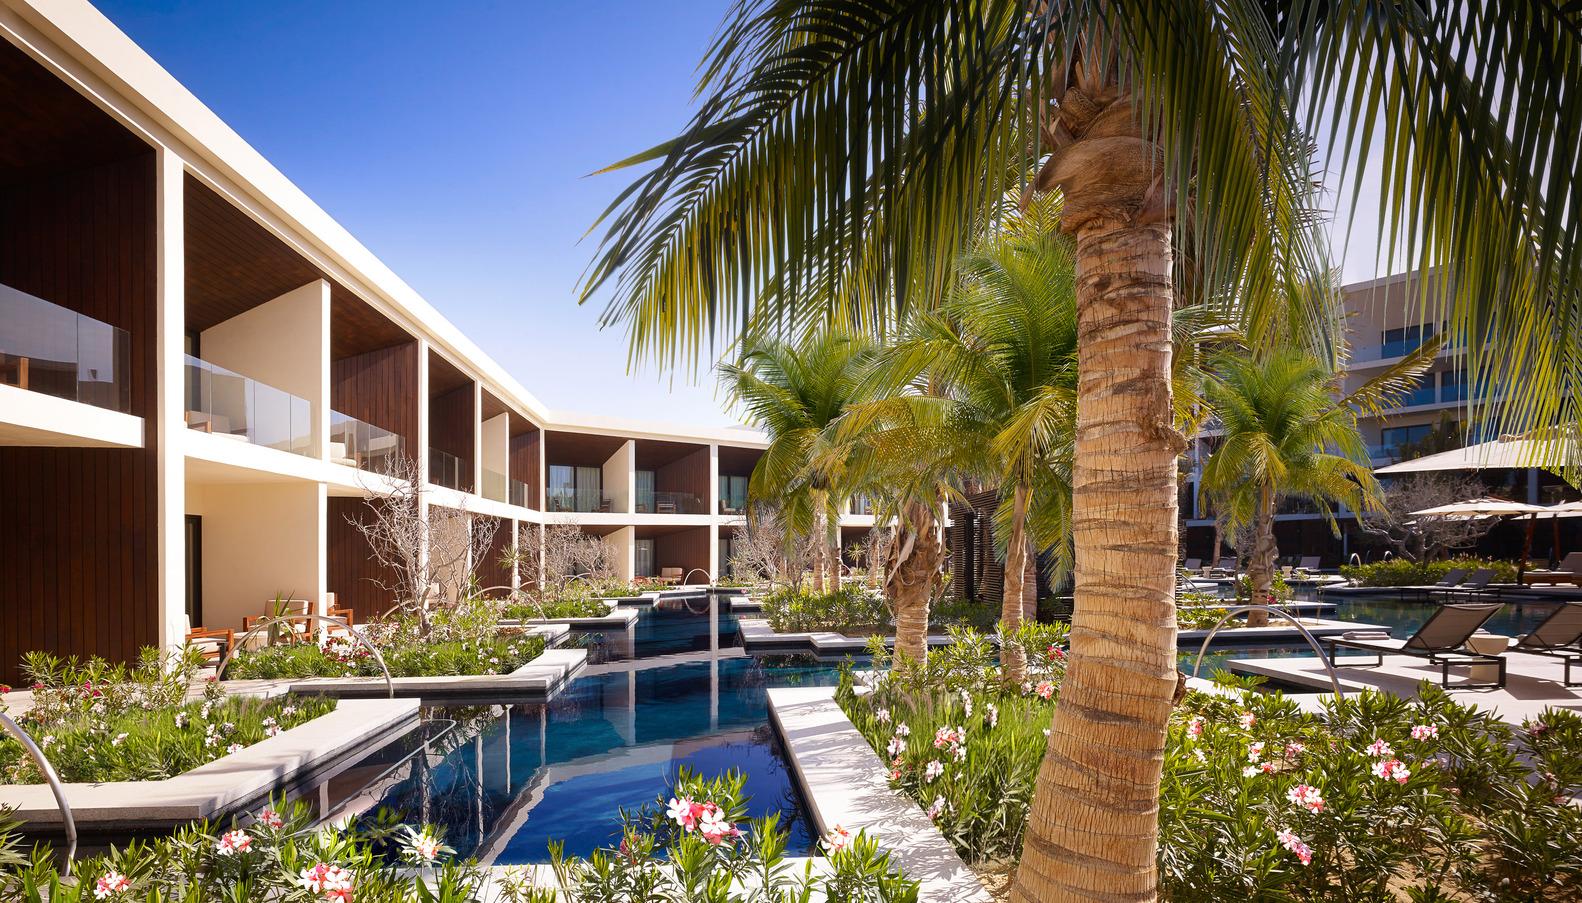 【墨西哥豪華度假酒店】充滿精緻極簡的細節 日落下飽覽太平洋遠景